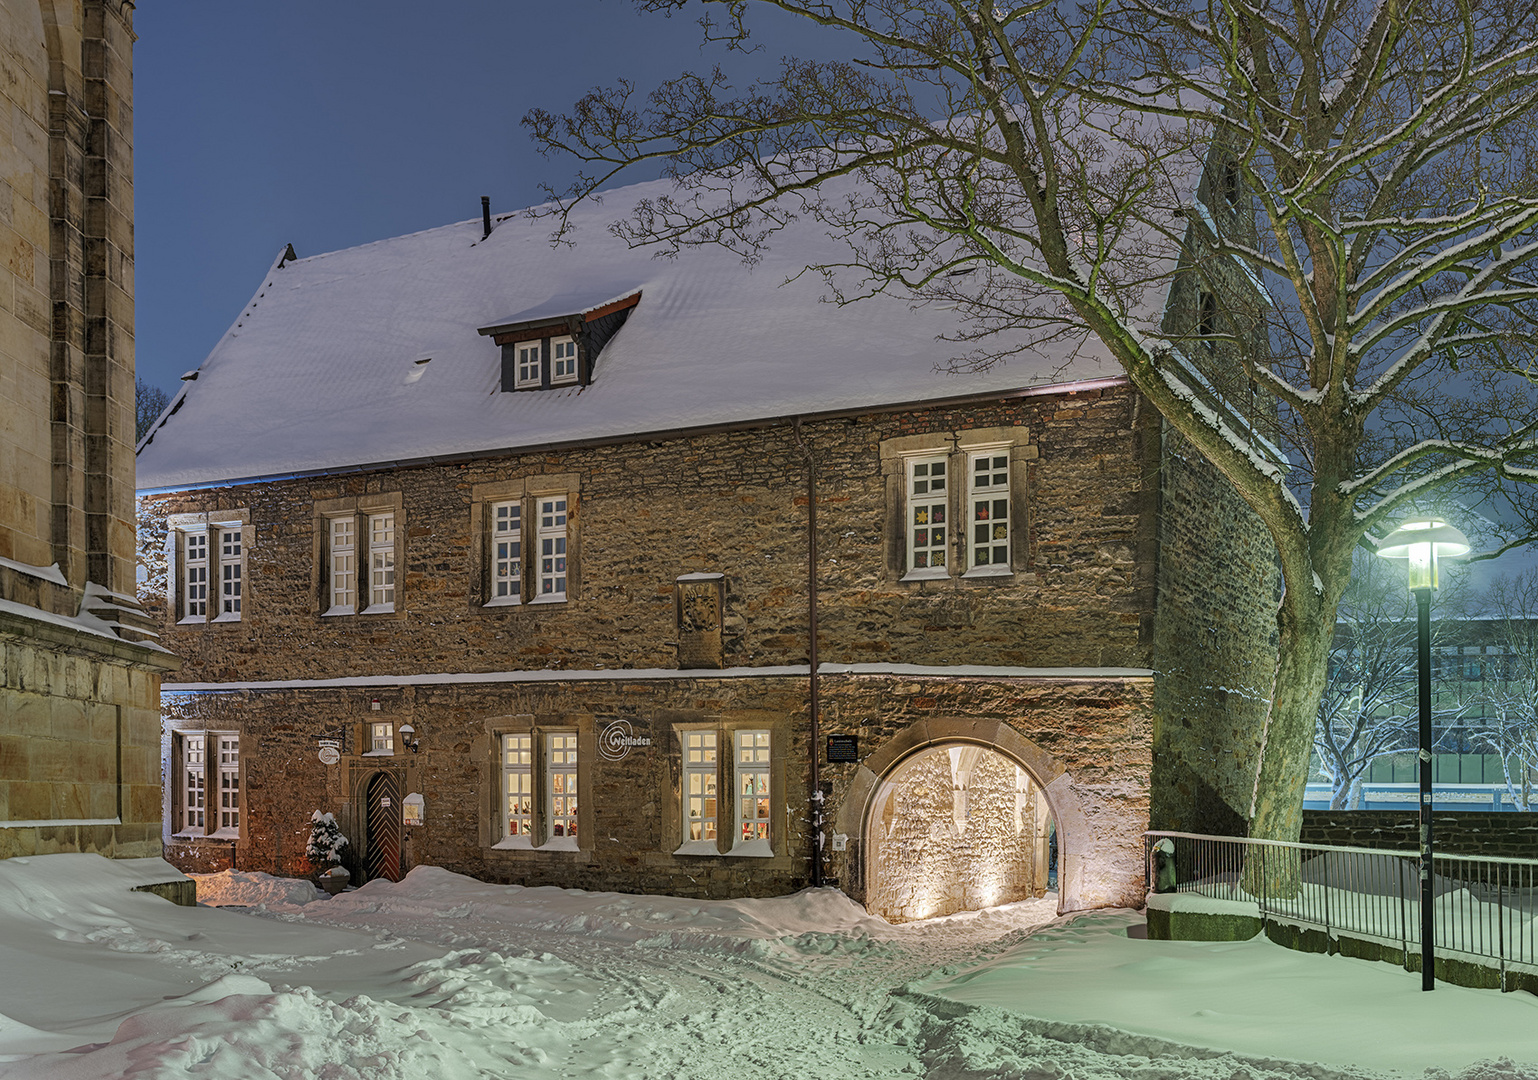 0428TZ-436TZ alte Lateinschule Stadthagen Winter Schnee beleuchtet